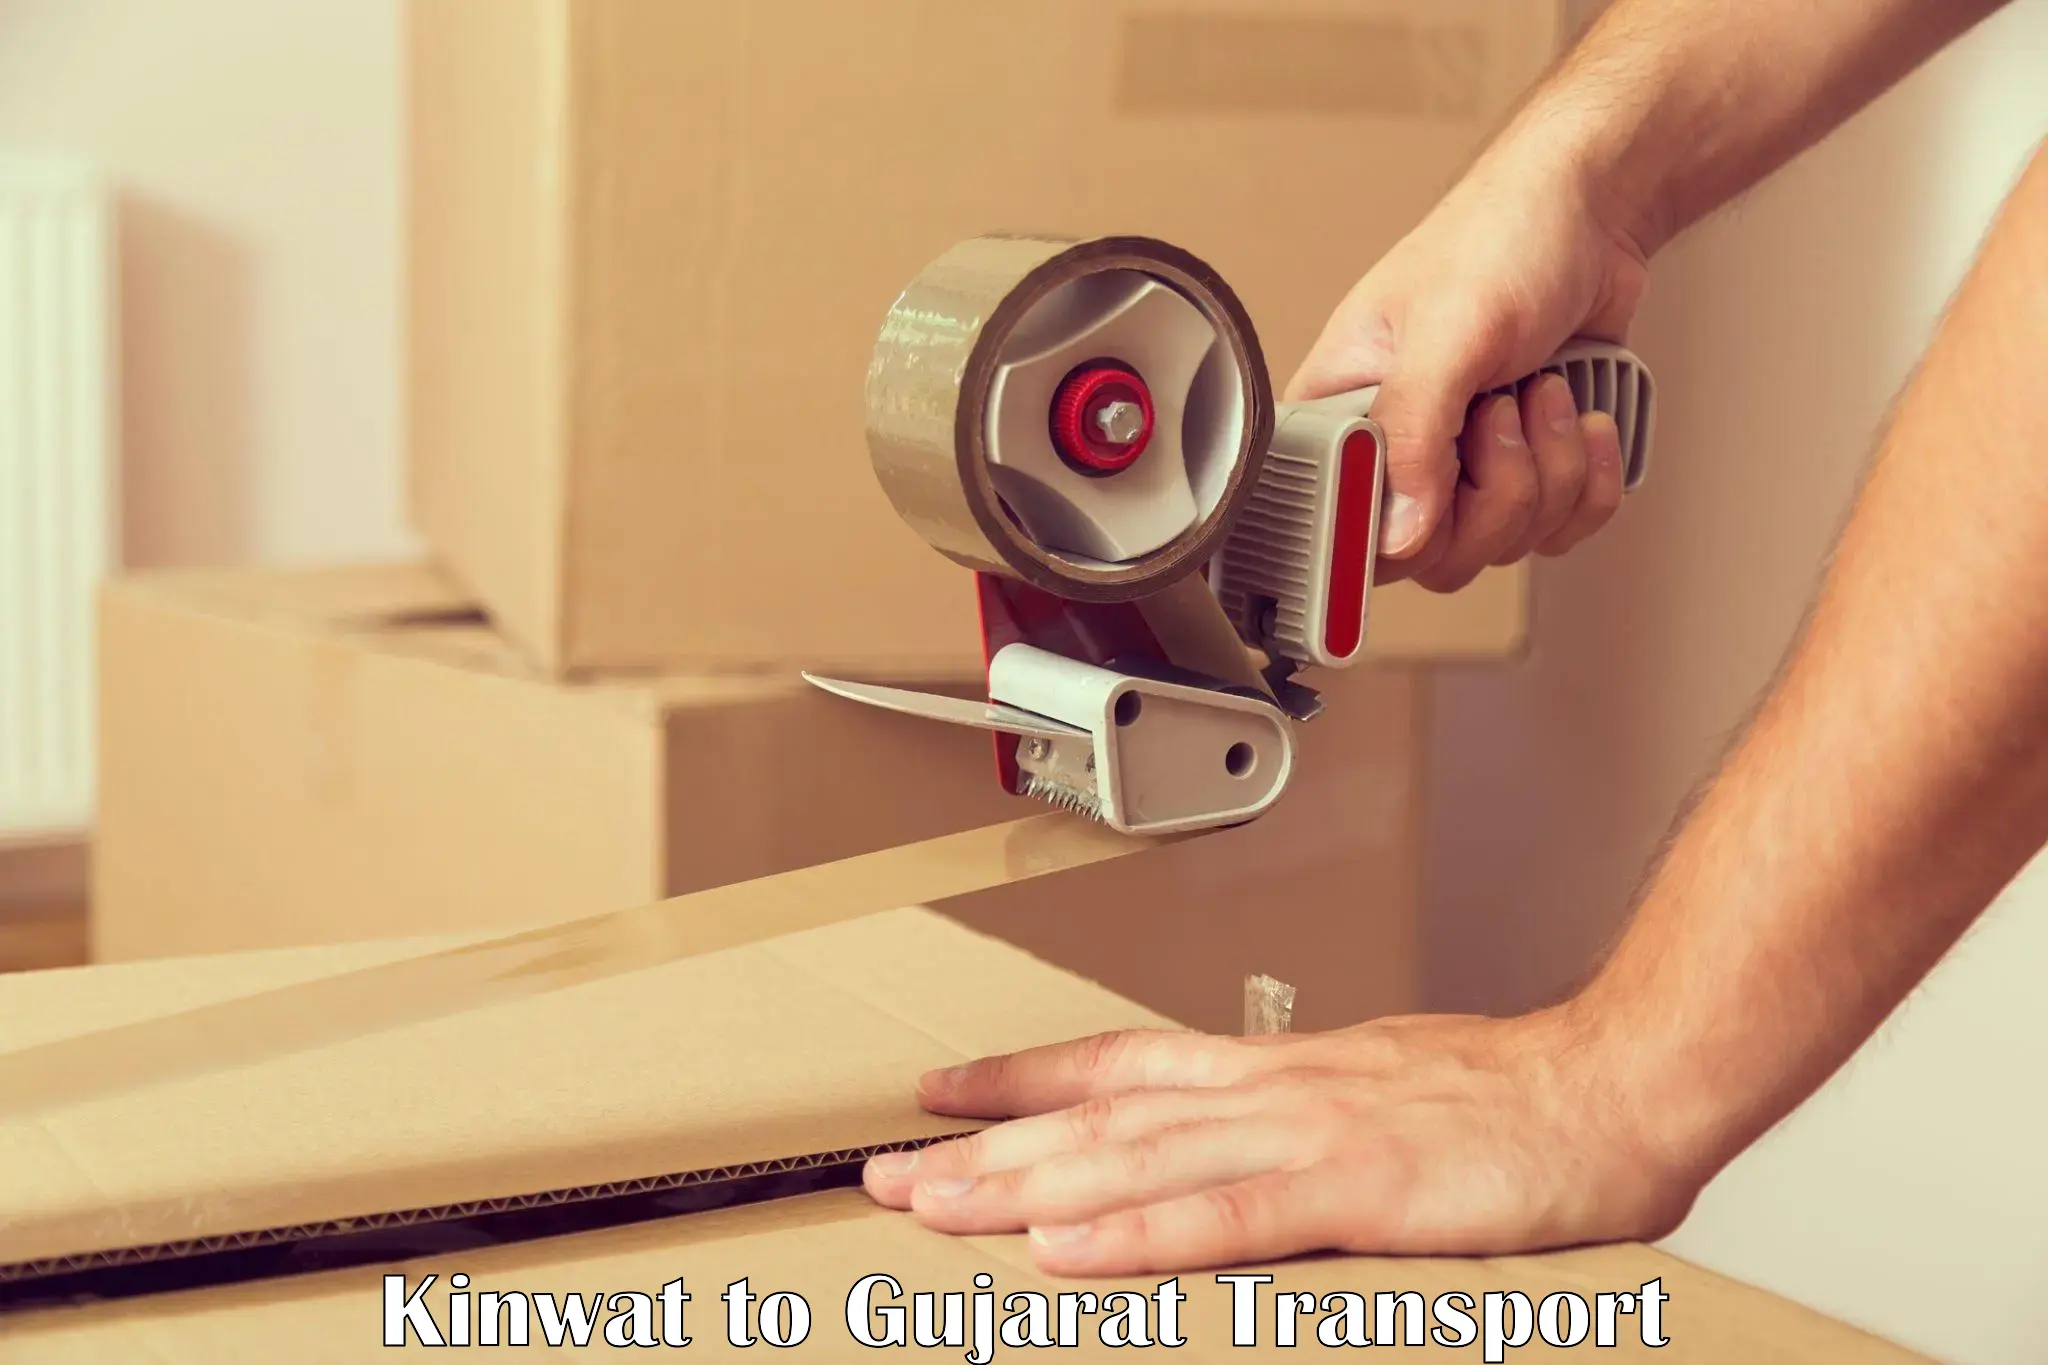 Commercial transport service Kinwat to IIIT Vadodara